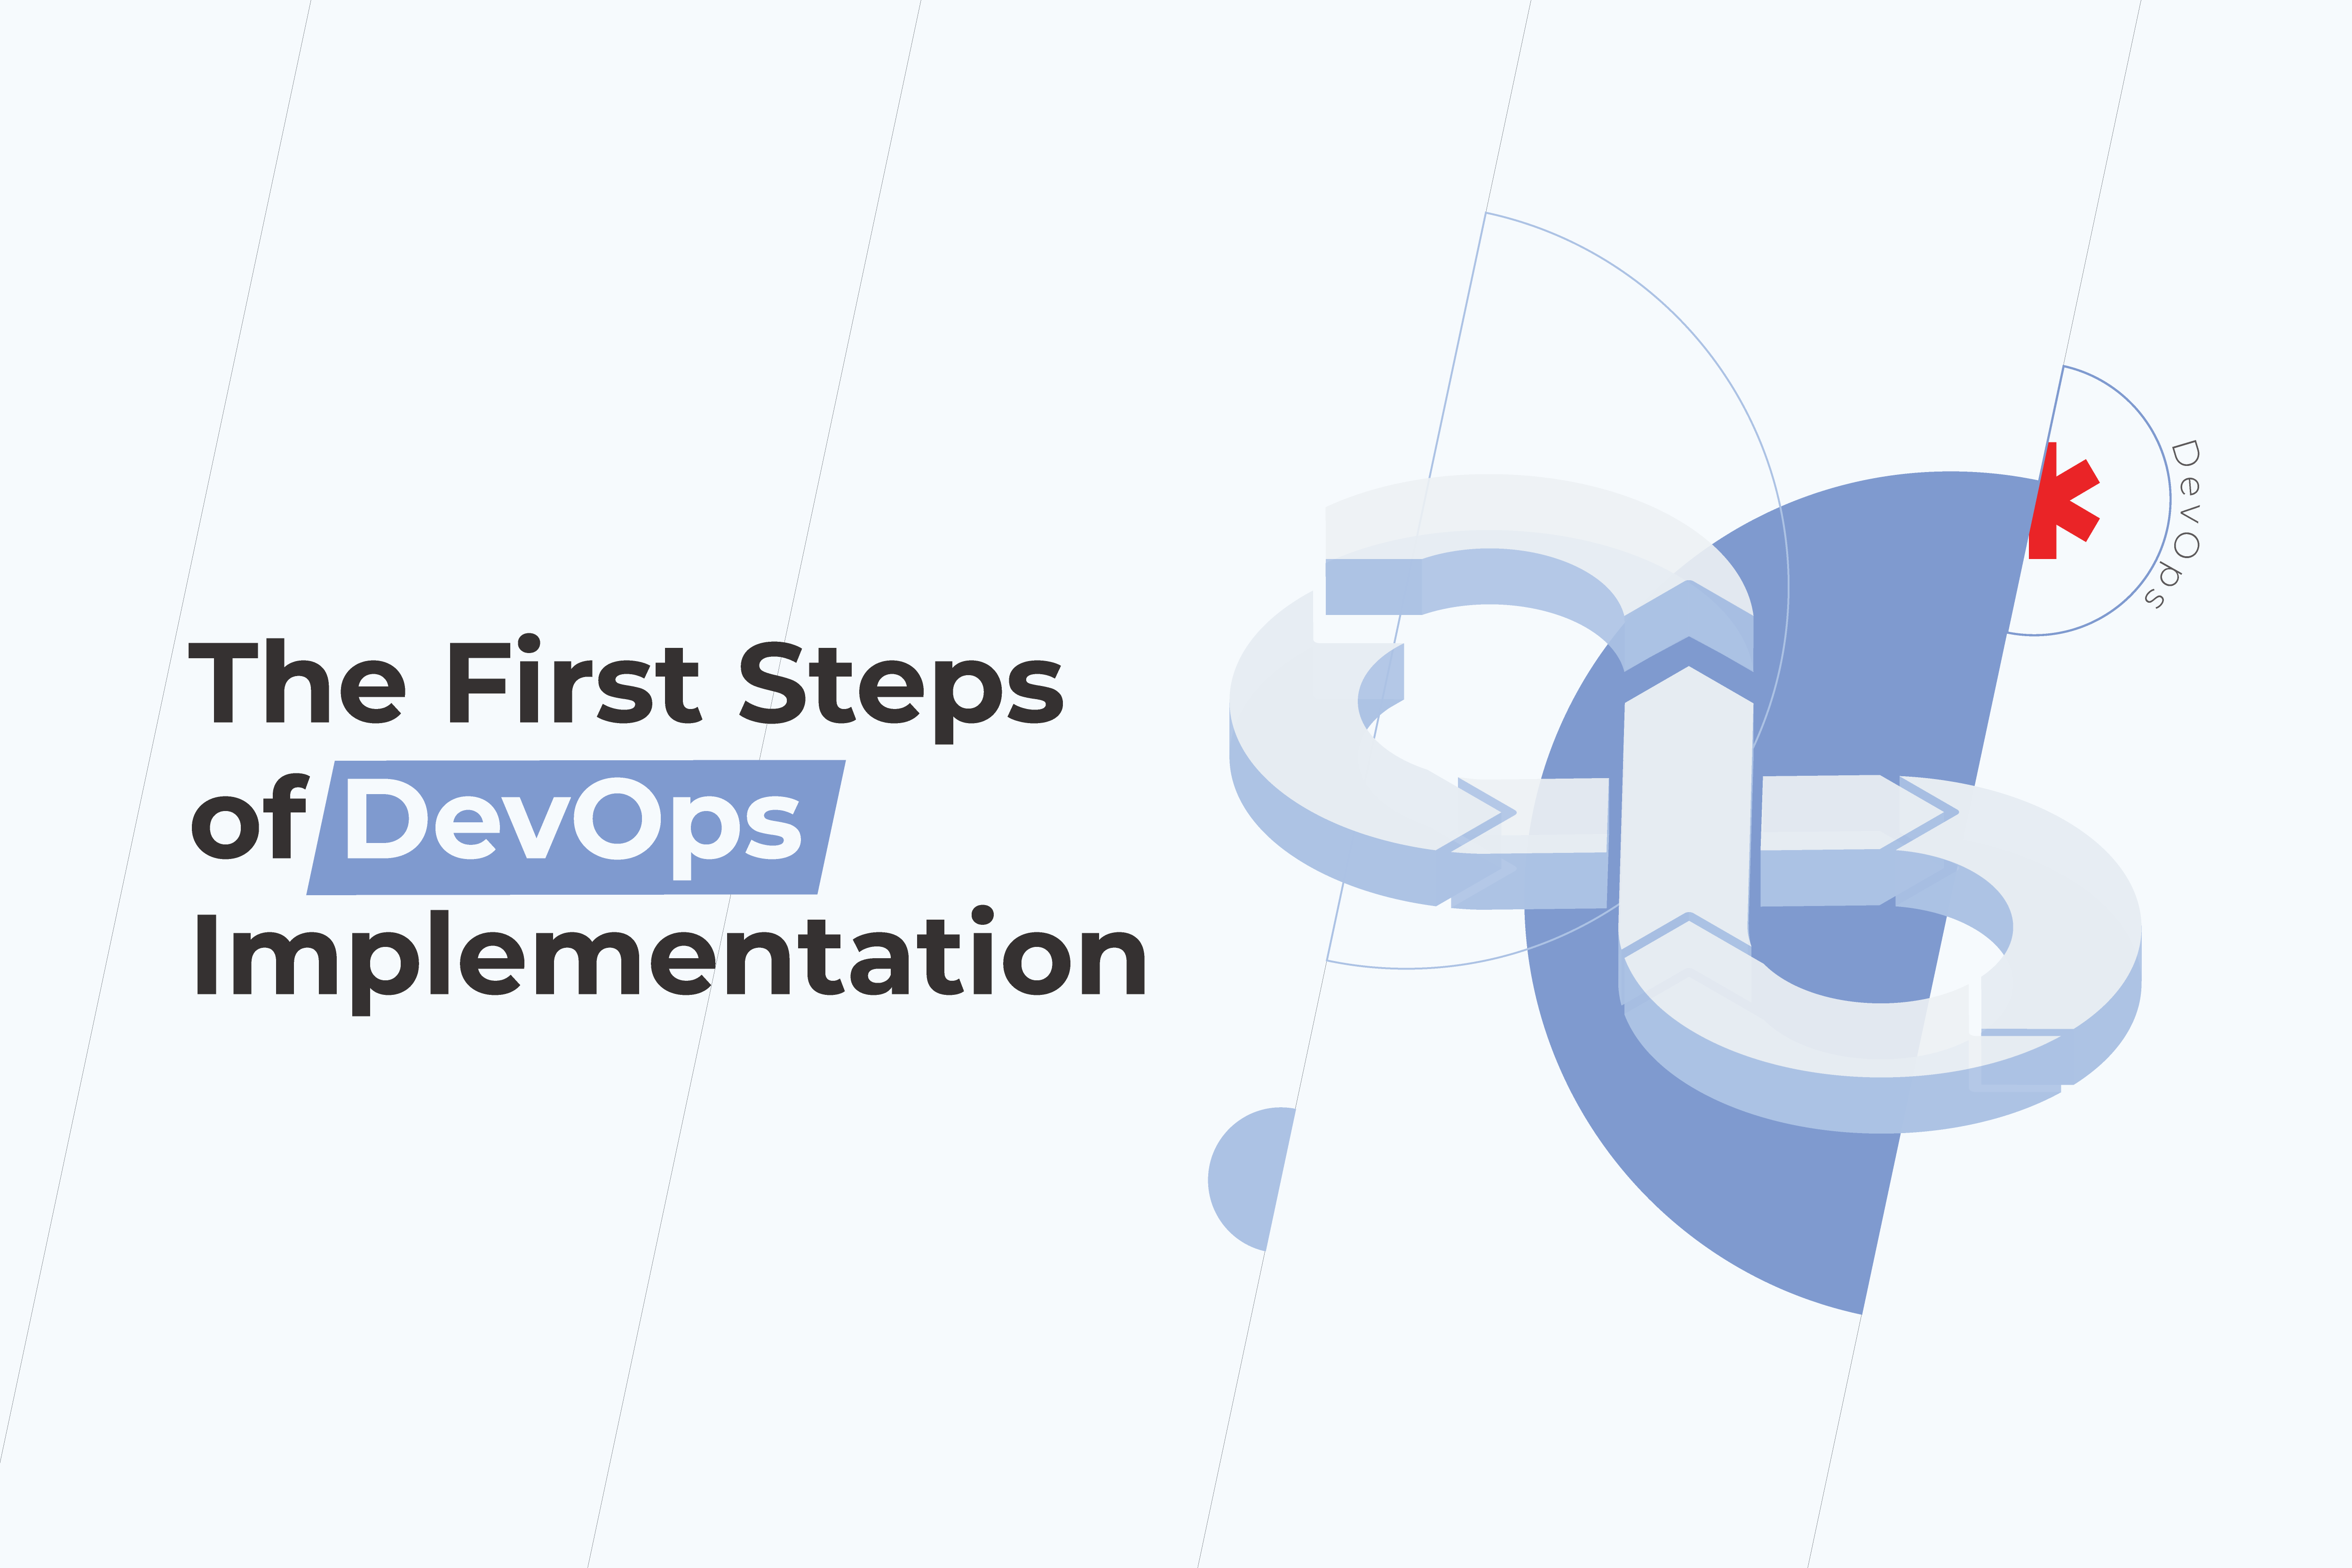 The First Steps of DevOps Implementation